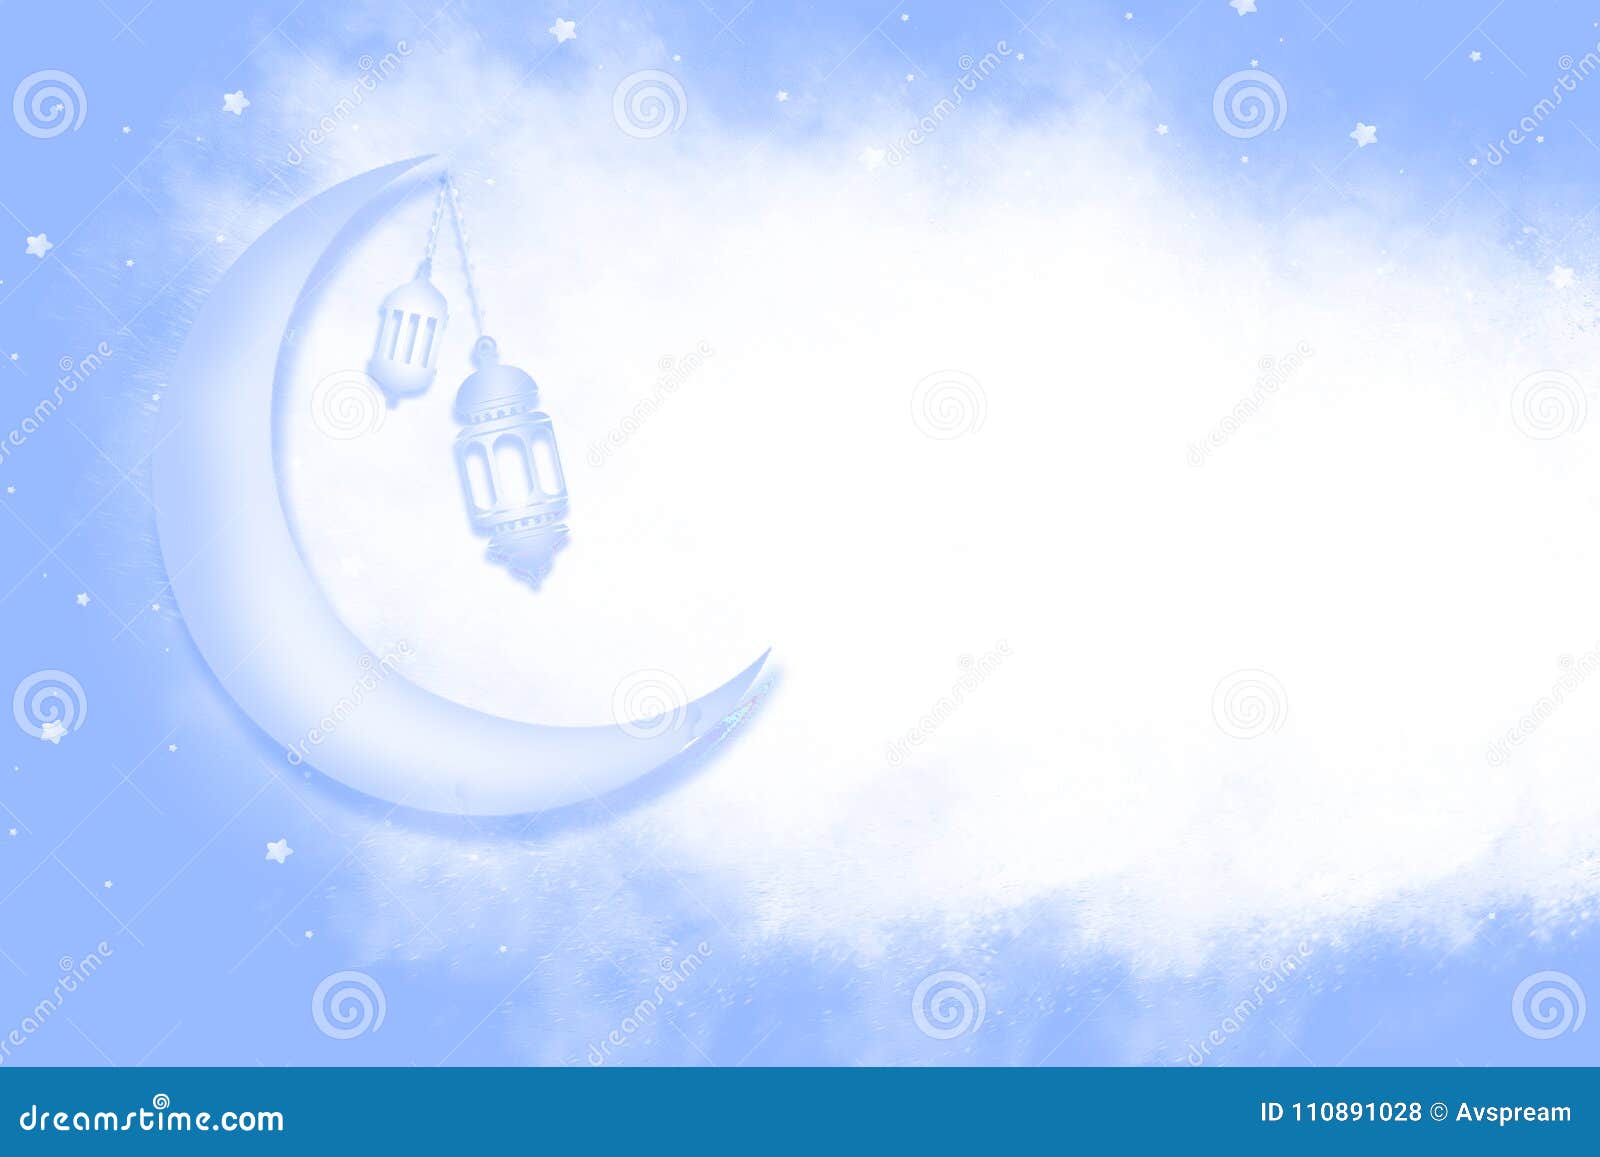 Eid Mubarak Background With Shiny Moon And Stars. Illustration 110891028 -  Megapixl